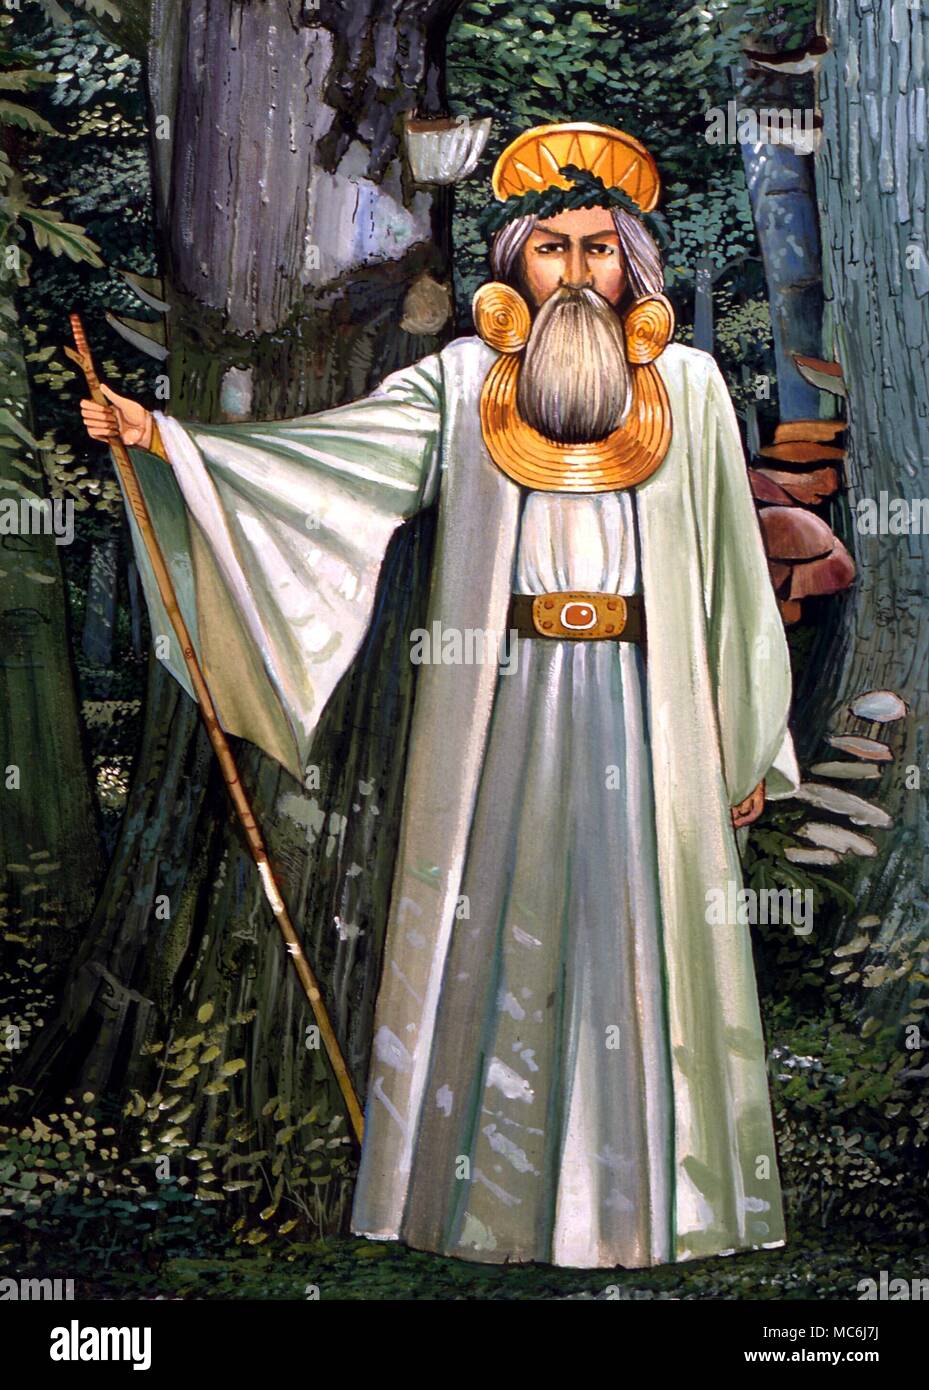 Druid sacerdote nella foresta, indossando vari 'Celtico' ornamenti tradizionalmente ascritta al sacerdozio. Pittura da Gordon Wain, 1989 Foto Stock